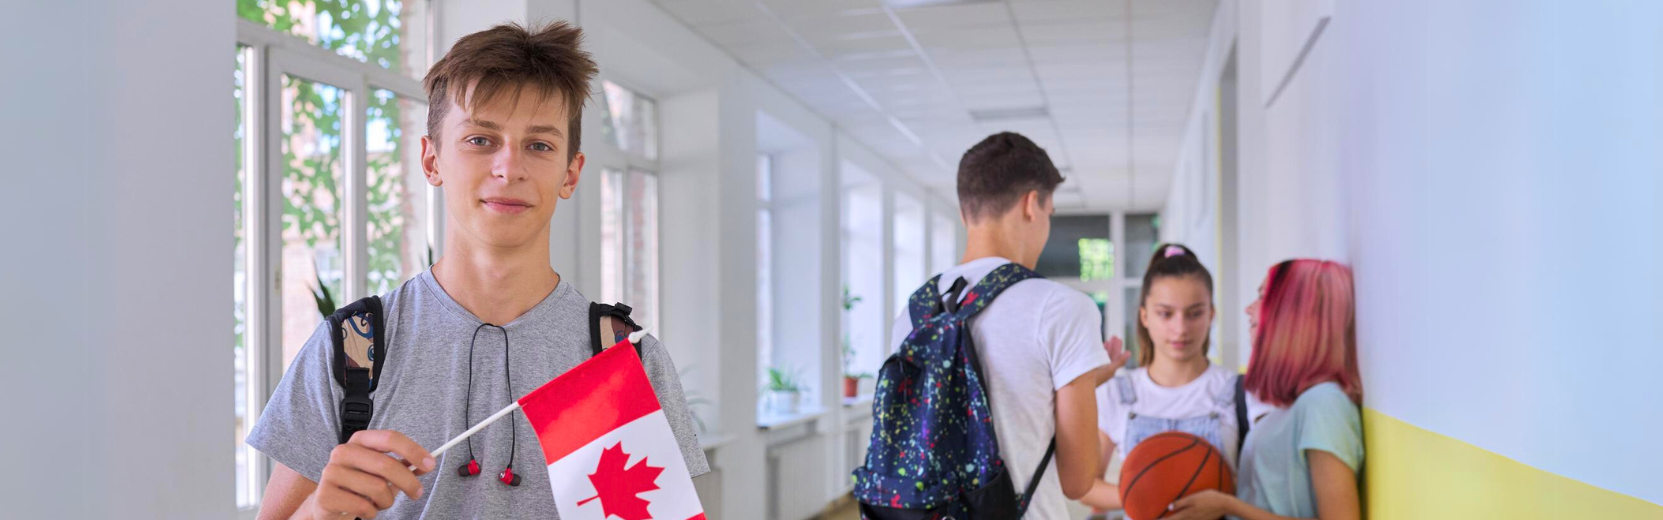 schulwahl kanada schueleraustausch Junge mit Flagge